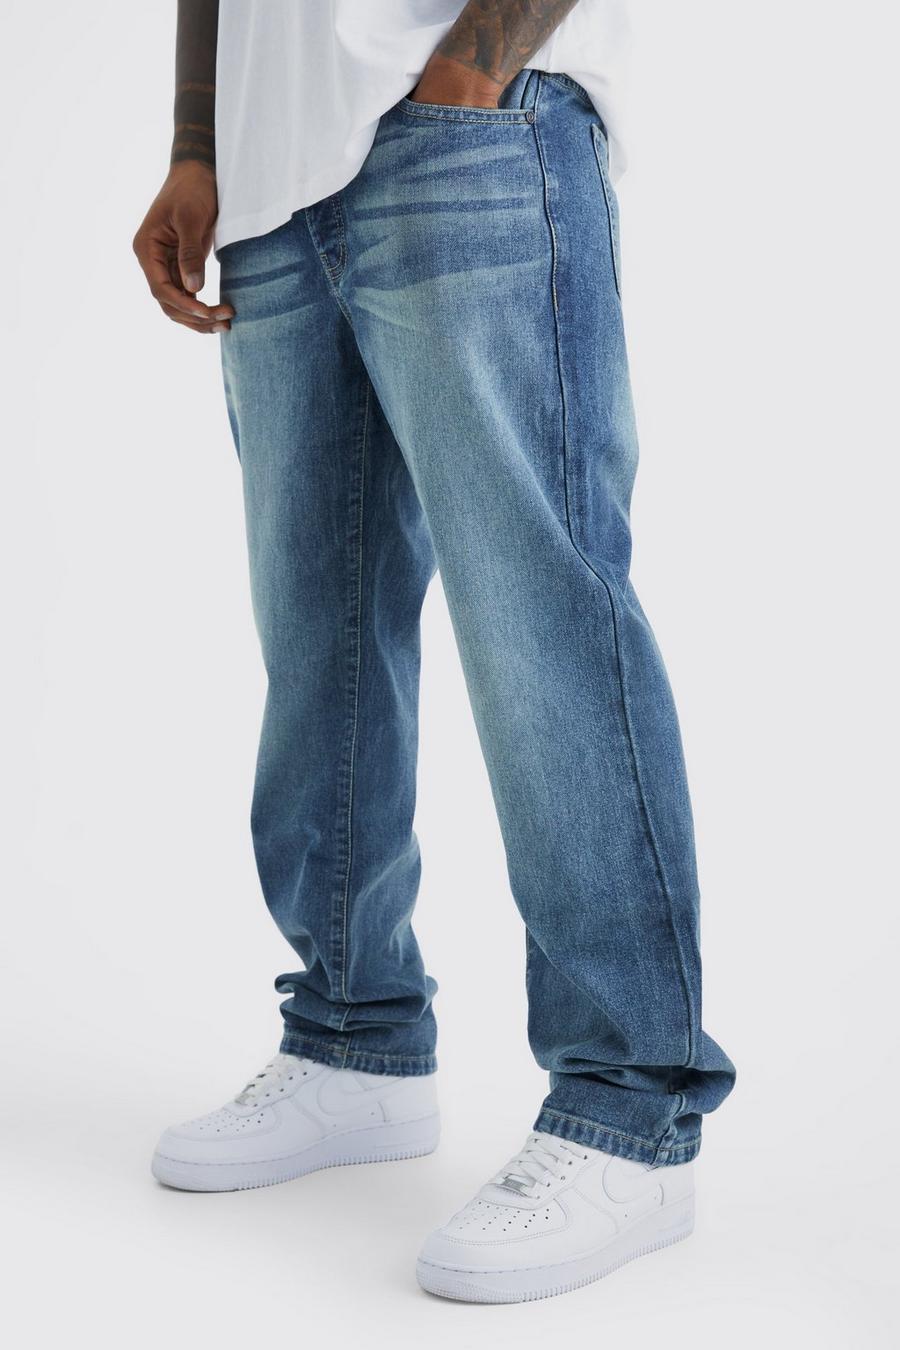 Lockere Jeans, Vintage blue blau